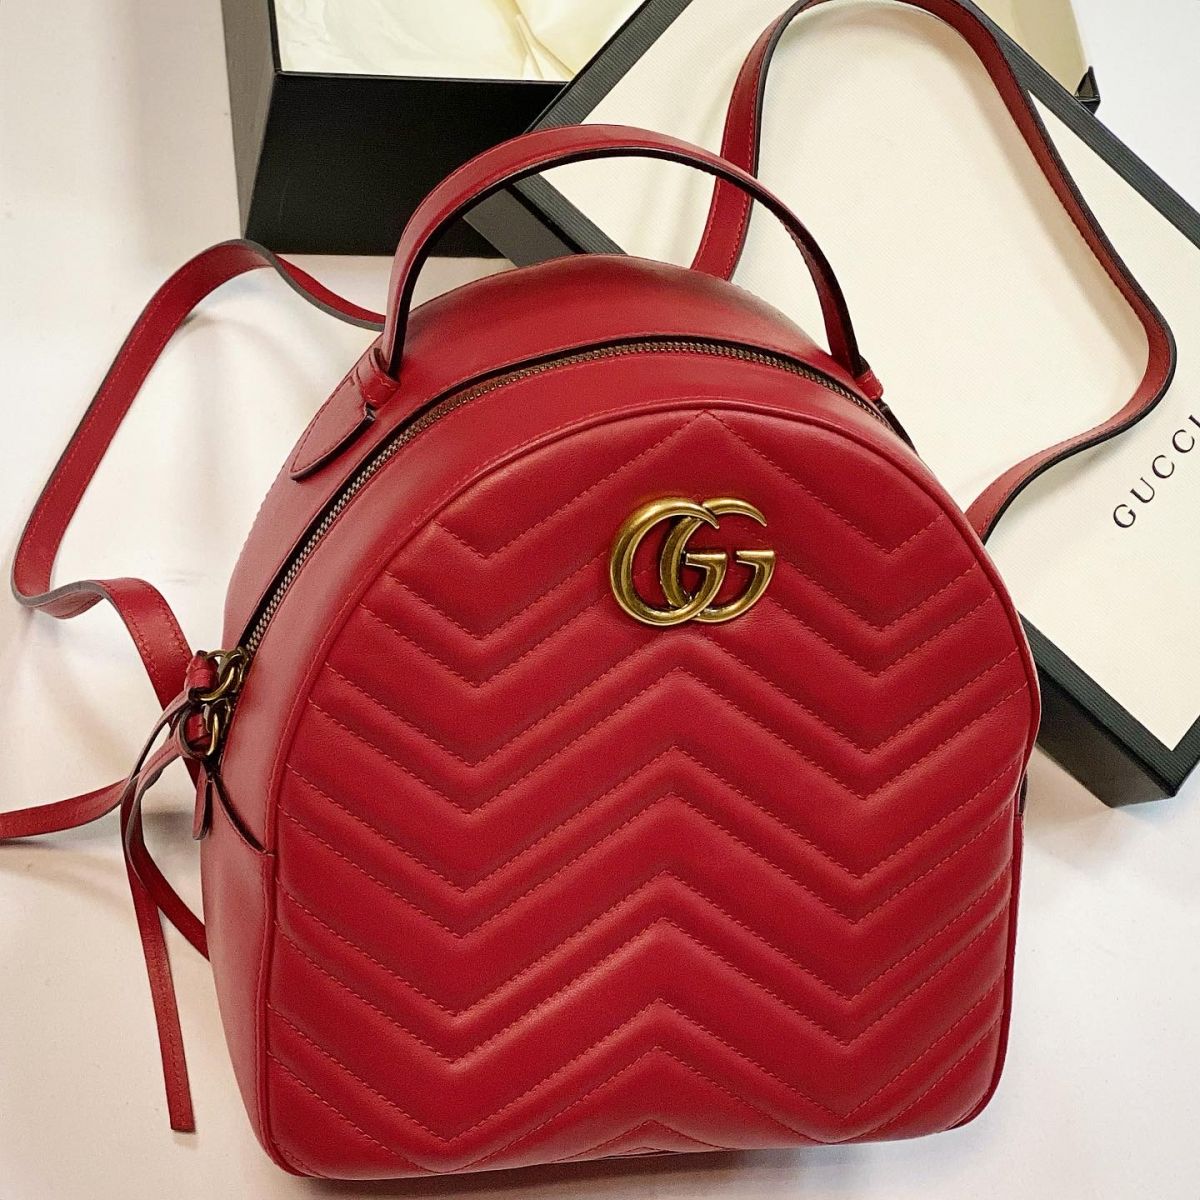 Рюкзак Gucci размер 20/25 цена 69 232 руб 